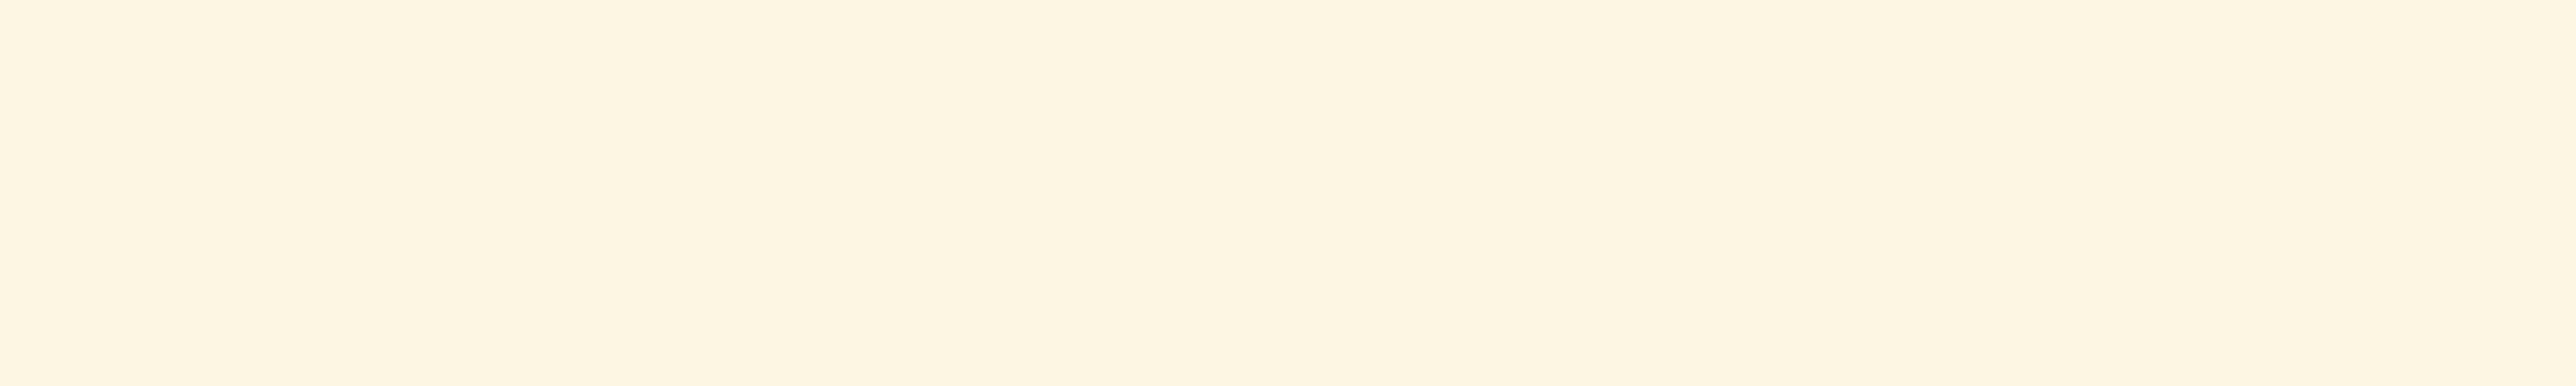 skai® colore opaco magnolie          0,35 1440